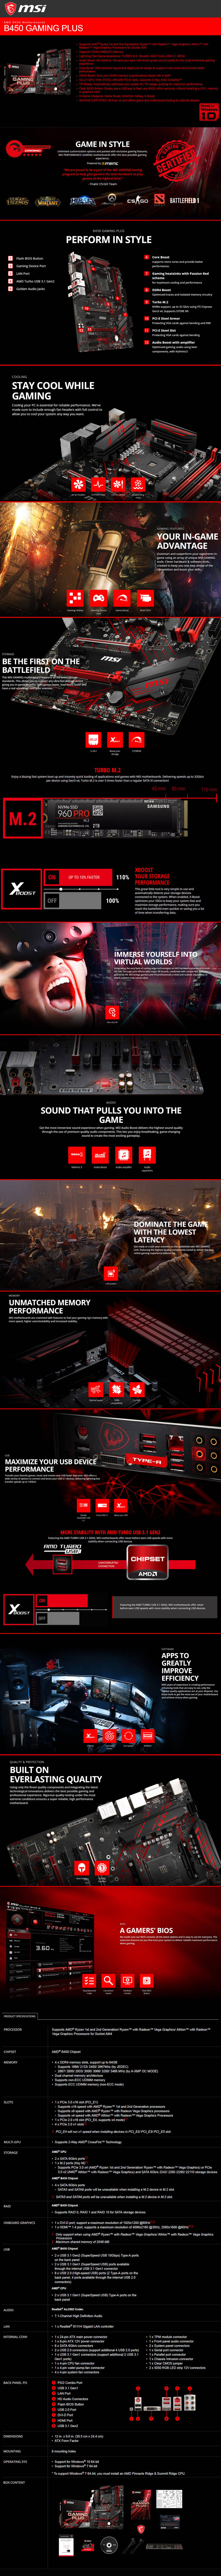 Buy Online MSI B450 GAMING PLUS AMD Motherboard